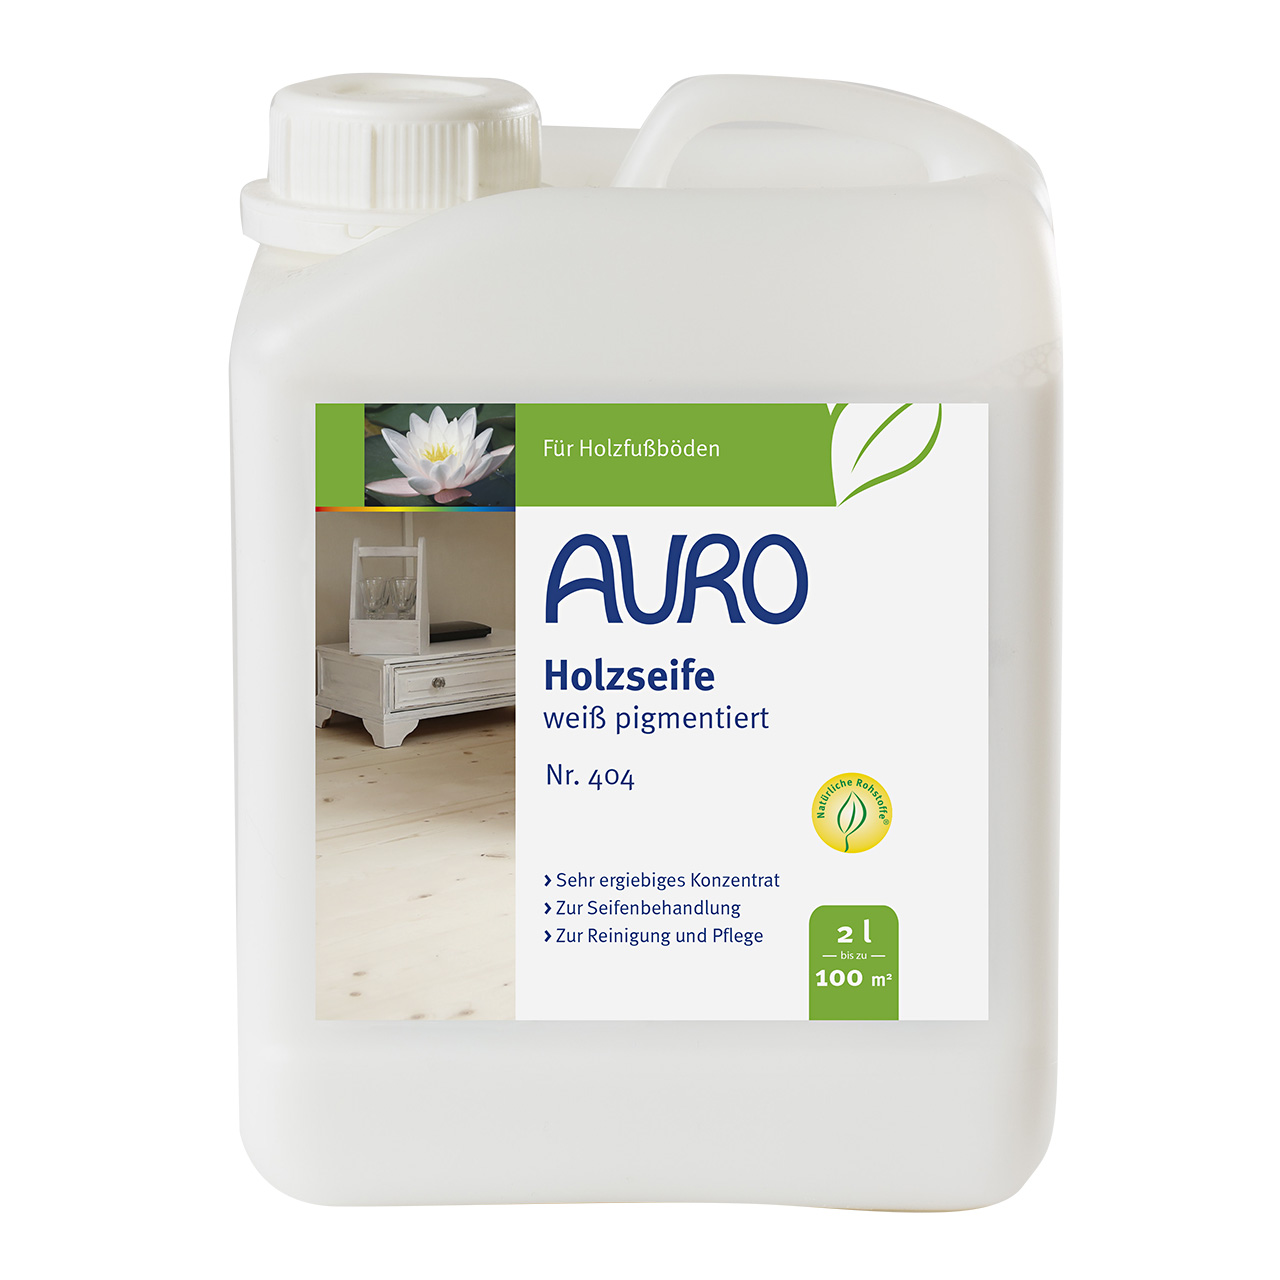 AURO Holzseife-Weiß pigmentiert Nr. 404 - 2 L